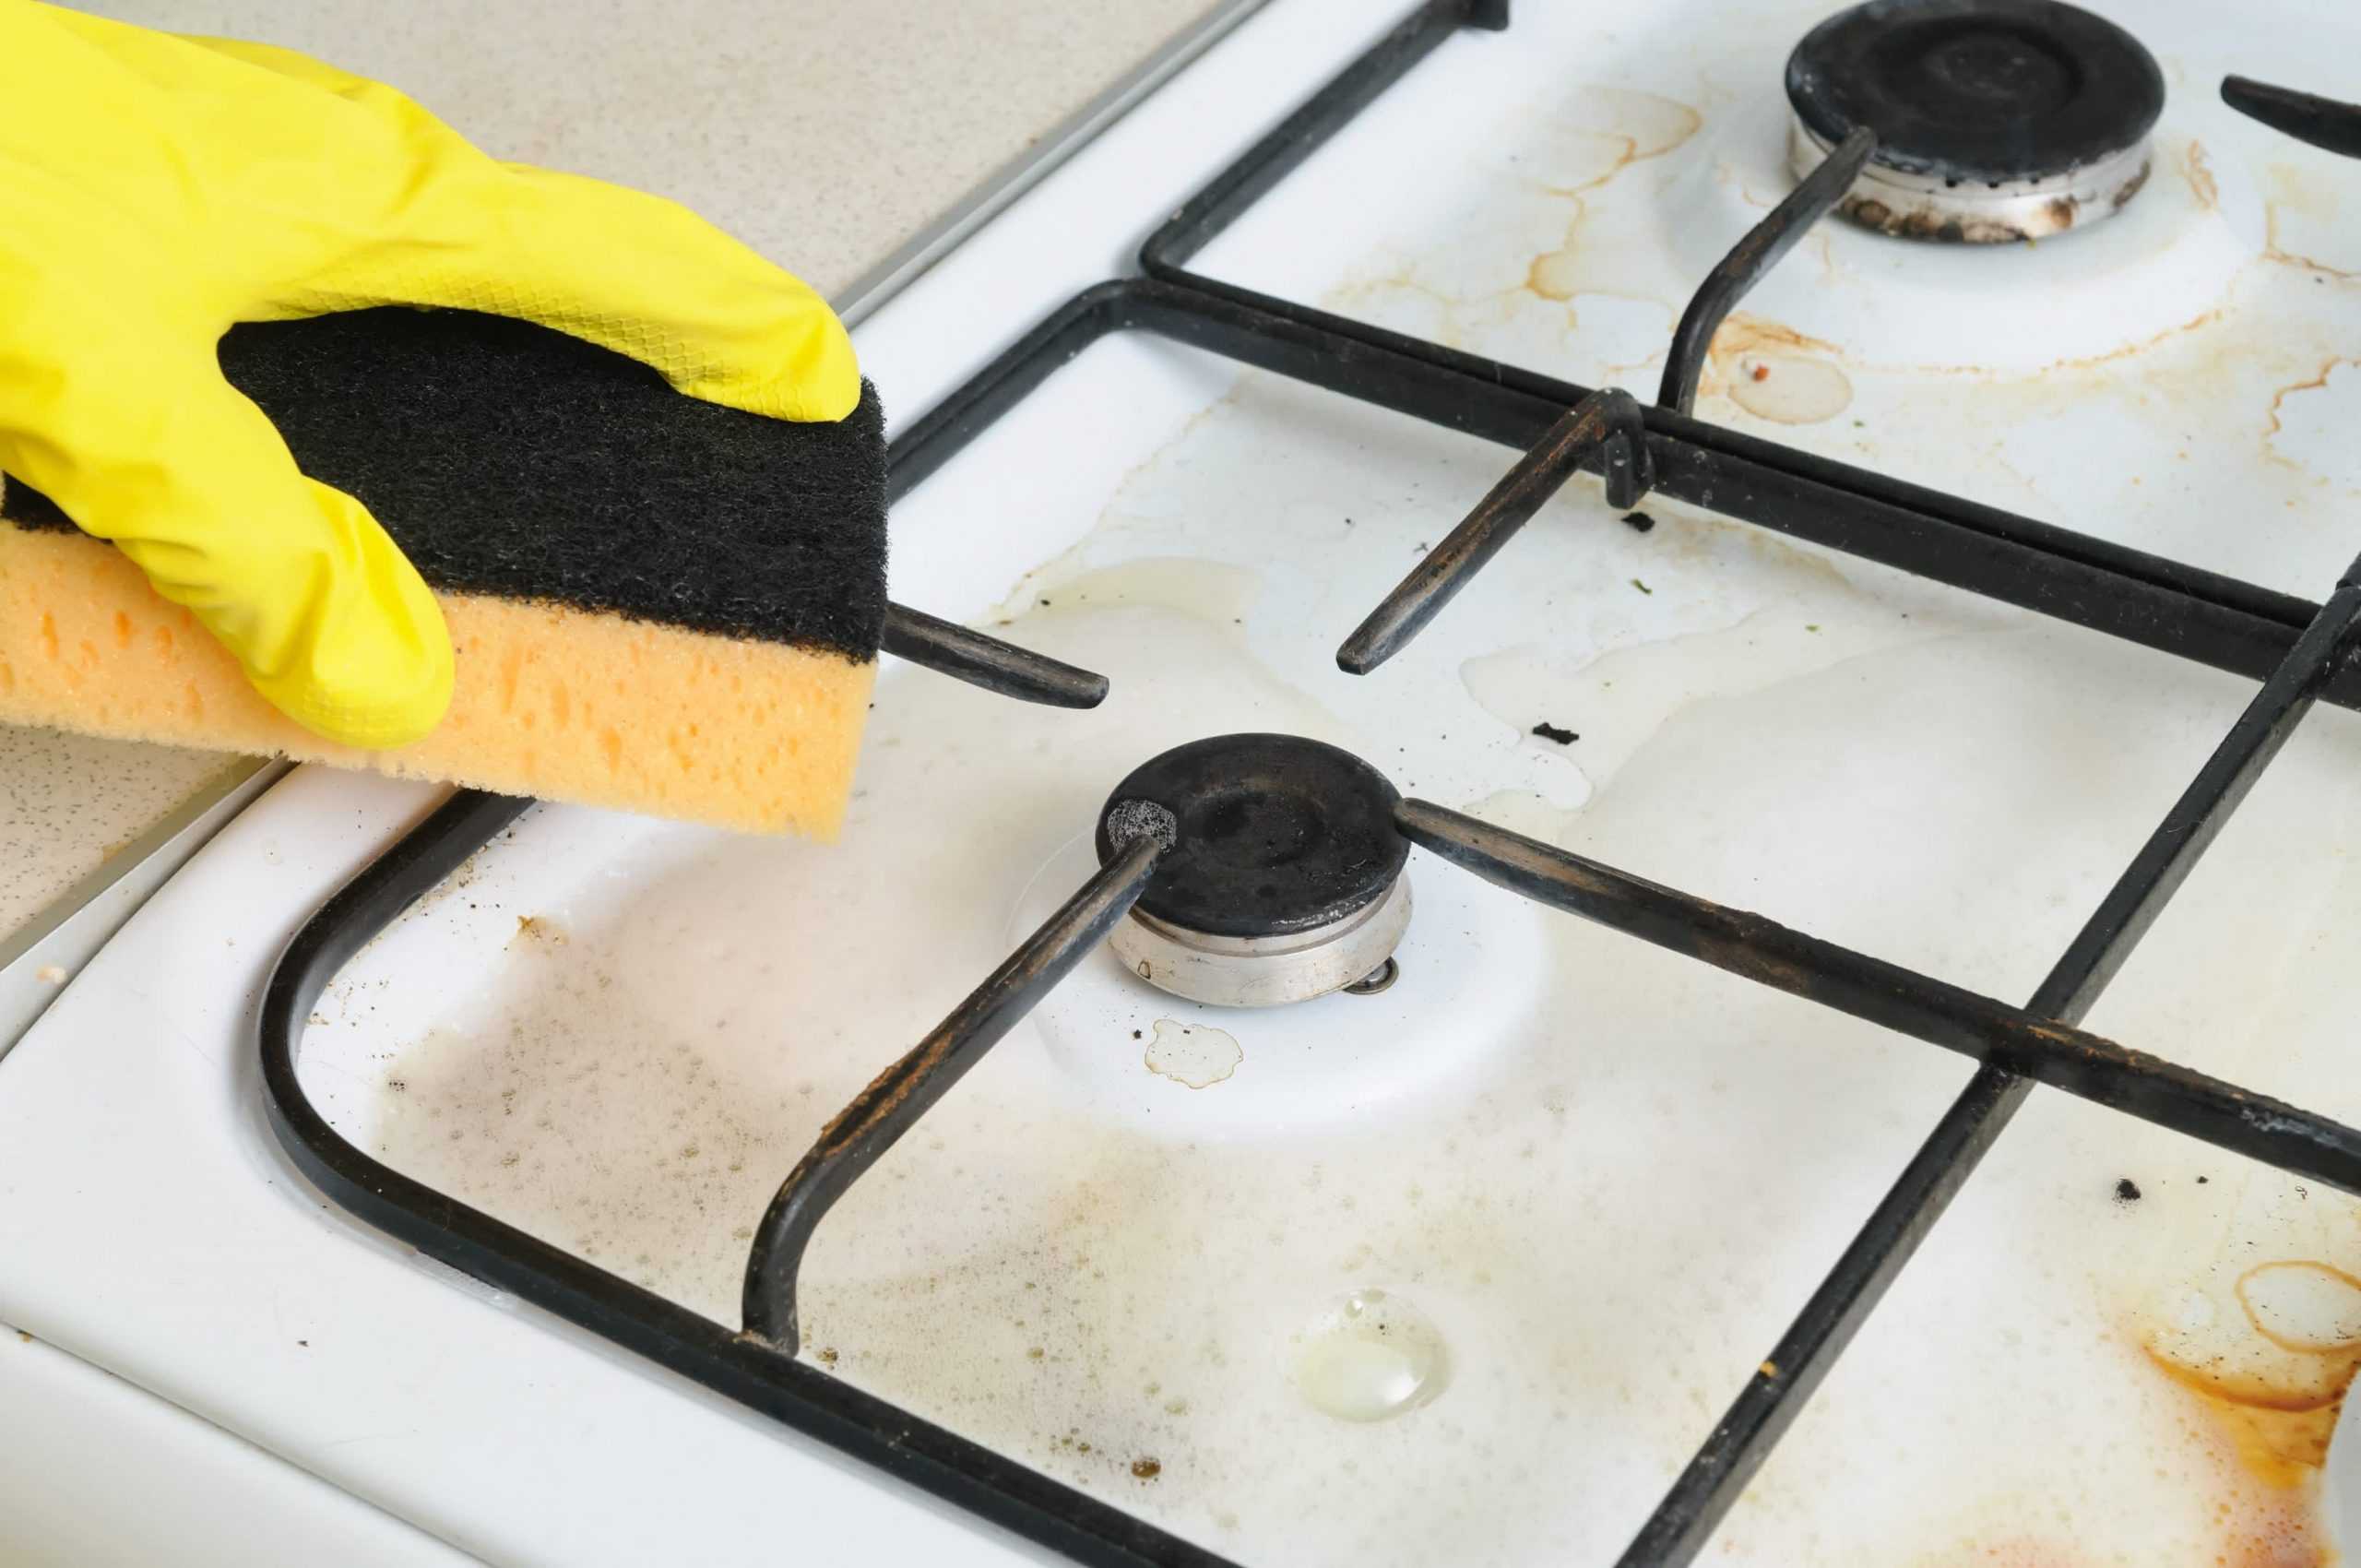 Как почистить вытяжку на кухне от жира